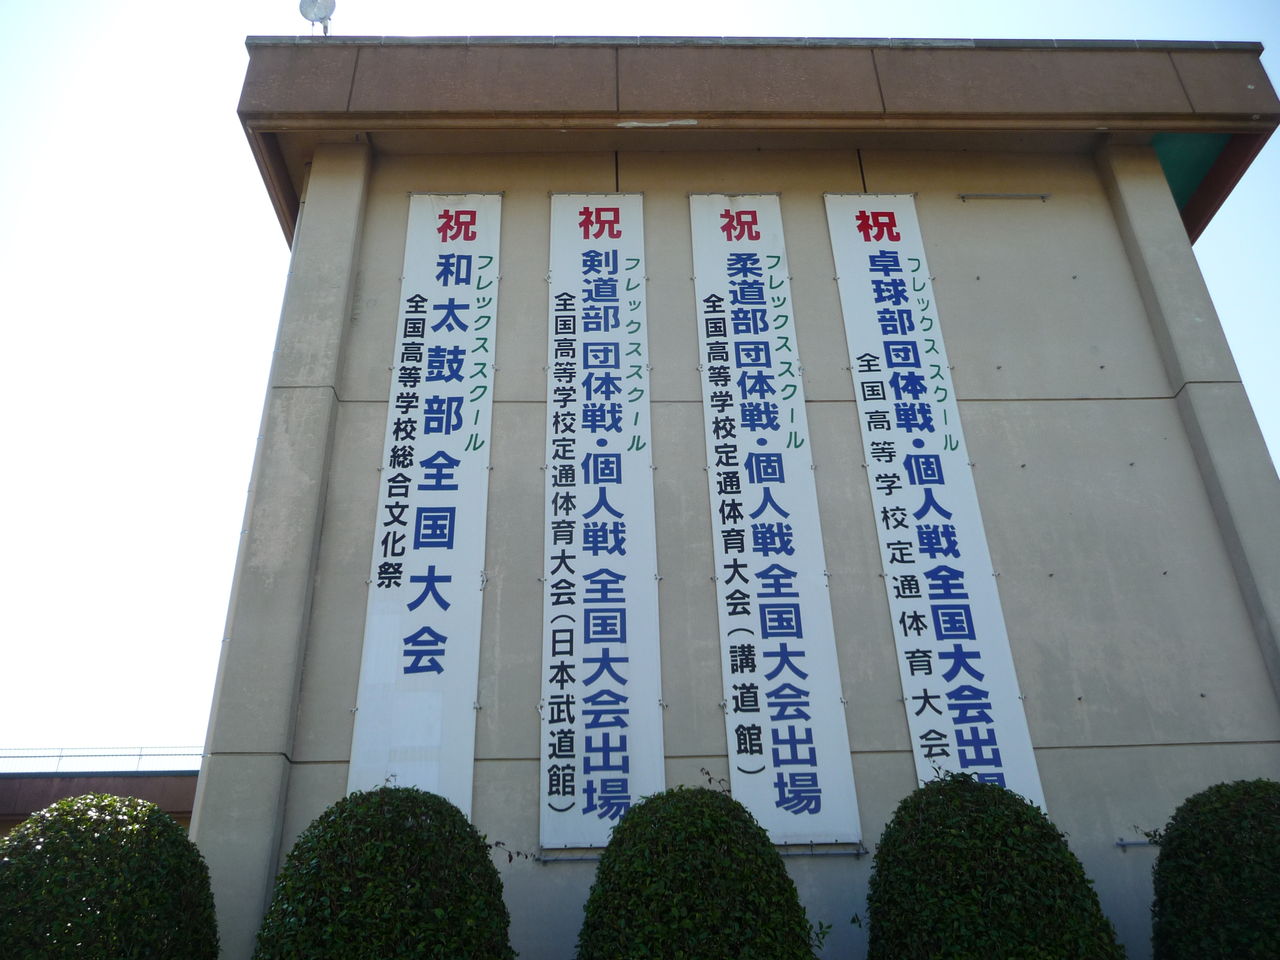 茨城県立鹿島灘高等学校さんに行きました Tmcキャンパスブログ